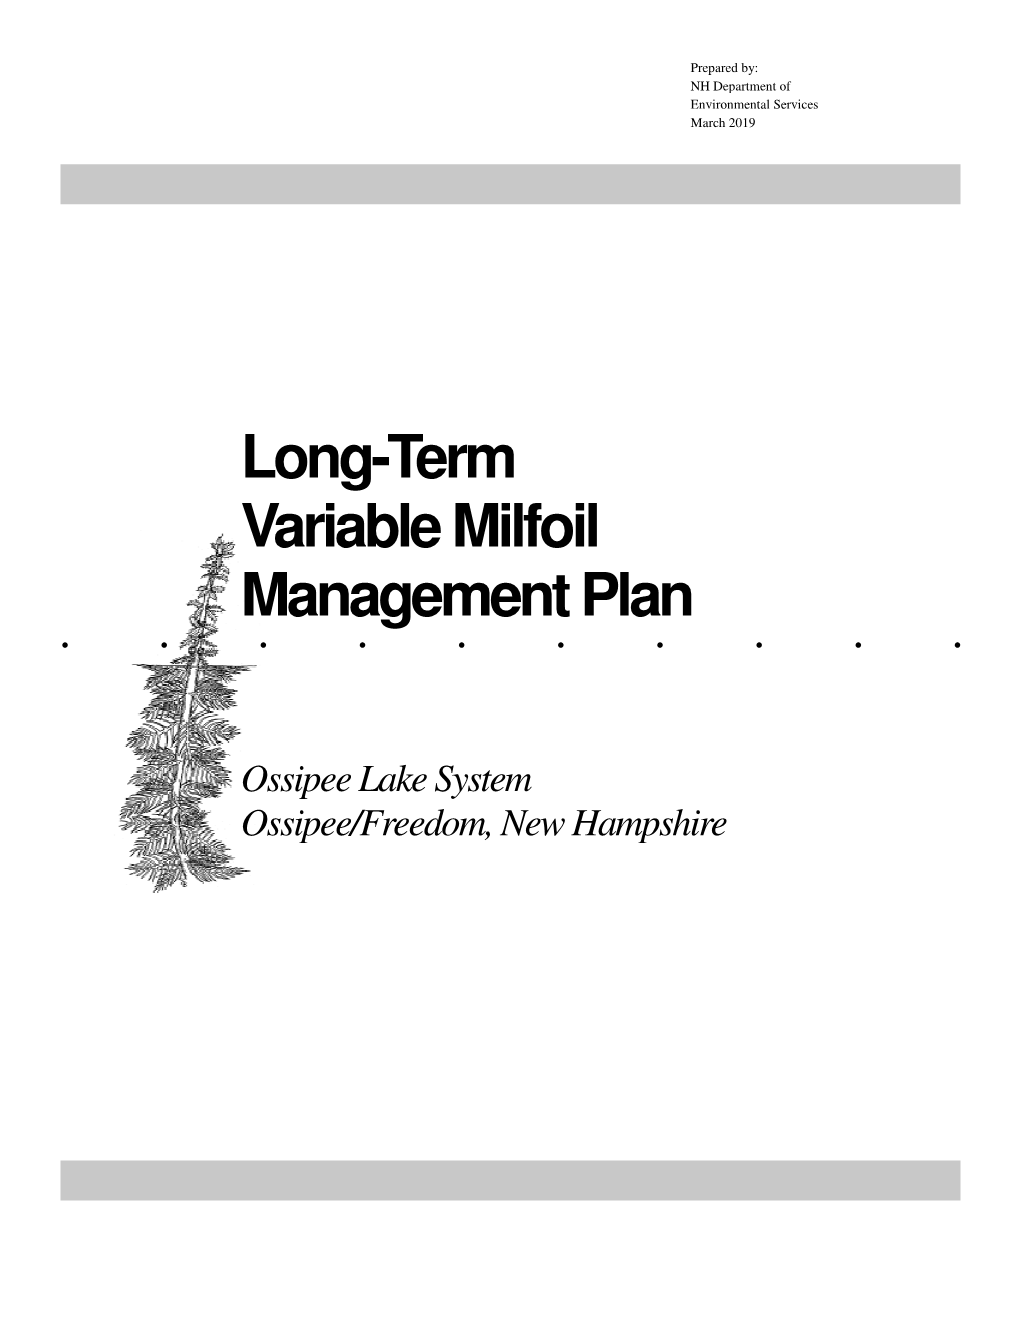 Long-Term Variable Milfoil Management Plan